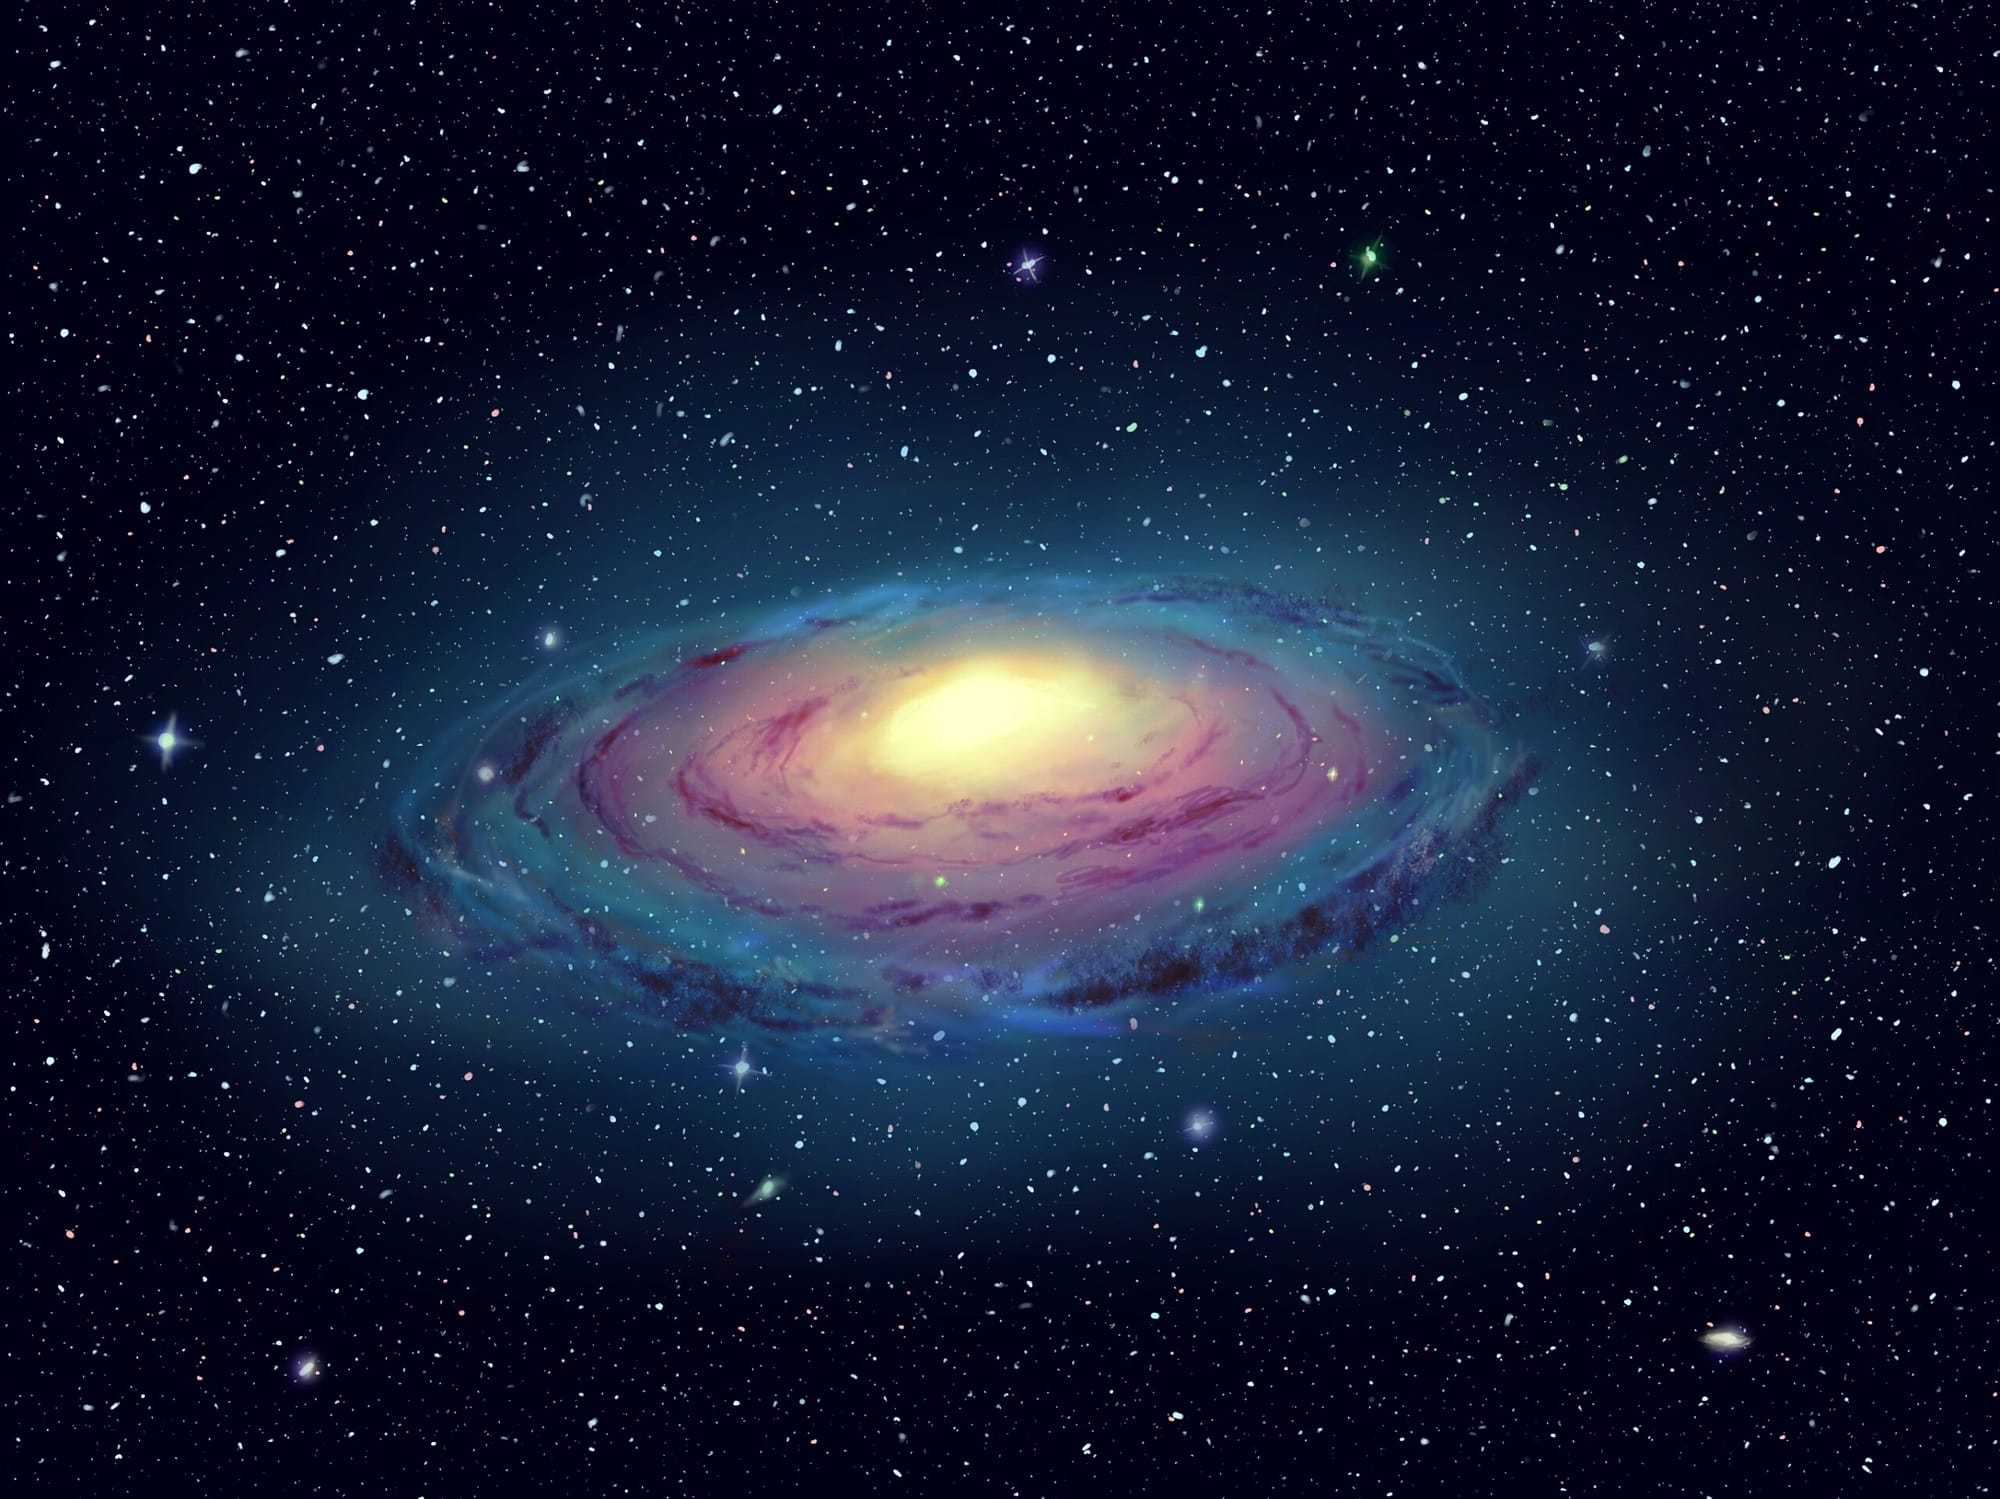 Galaxy design - Artwork - Digital artwork of a brightly-lit galaxy